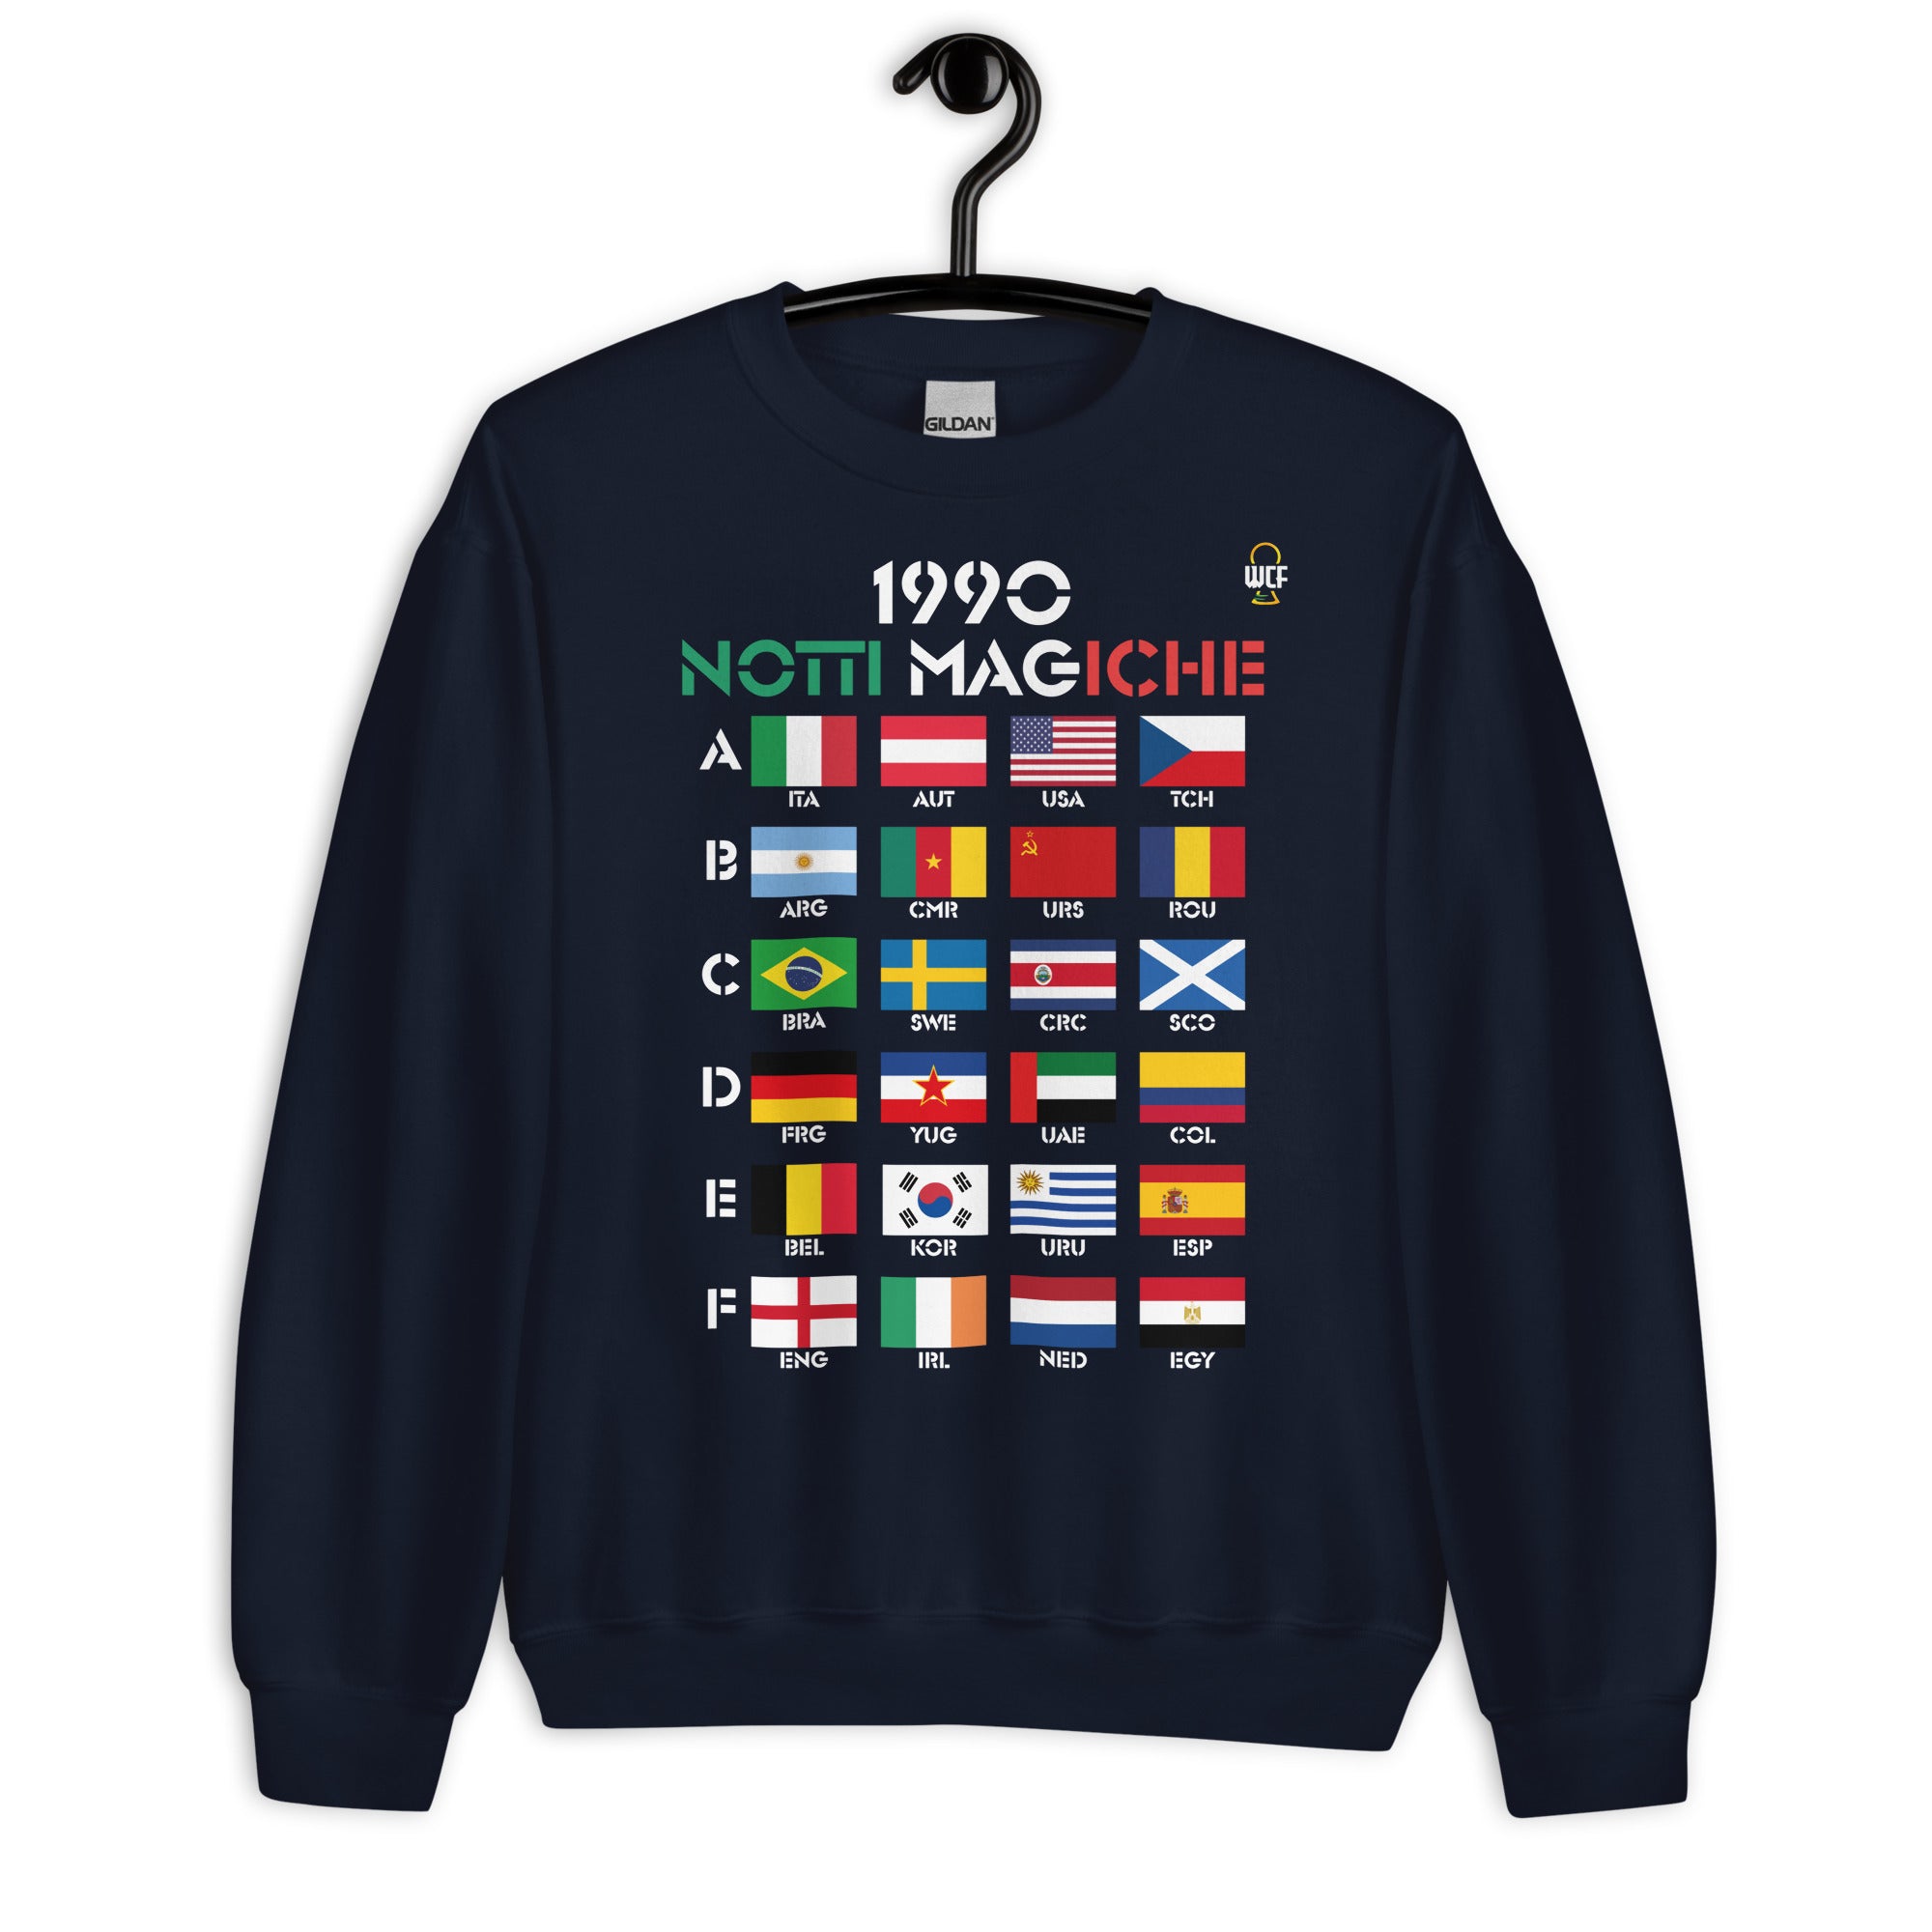 FIFA World Cup Italia 1990 Sweatshirt - Notti Magiche